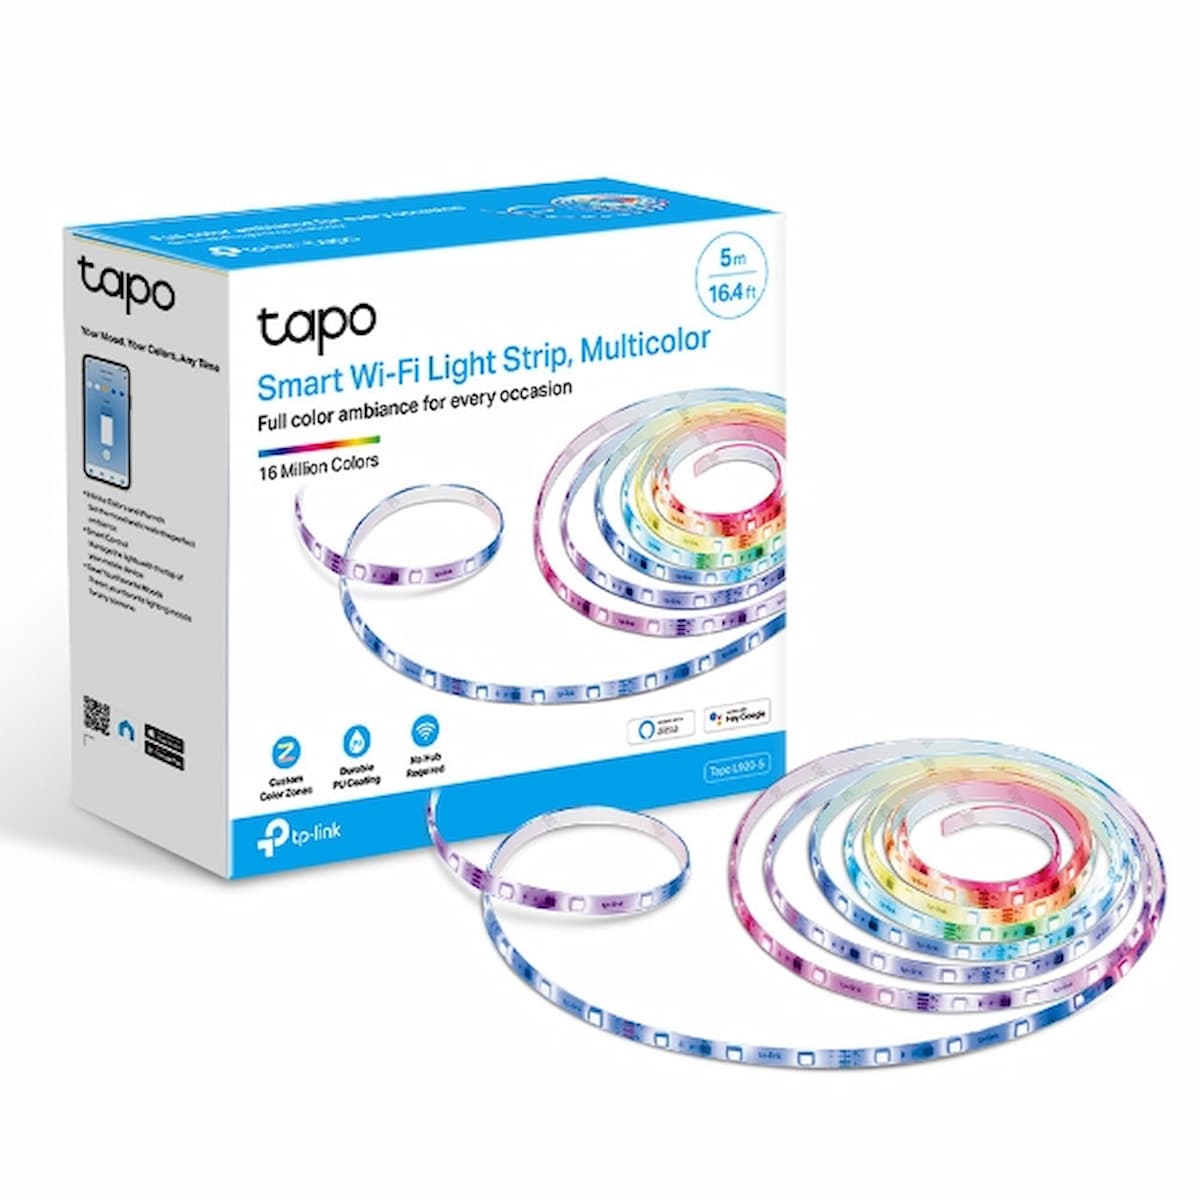 Smart Wi-Fi Light Strip, Multicolor | Tapo L920-5